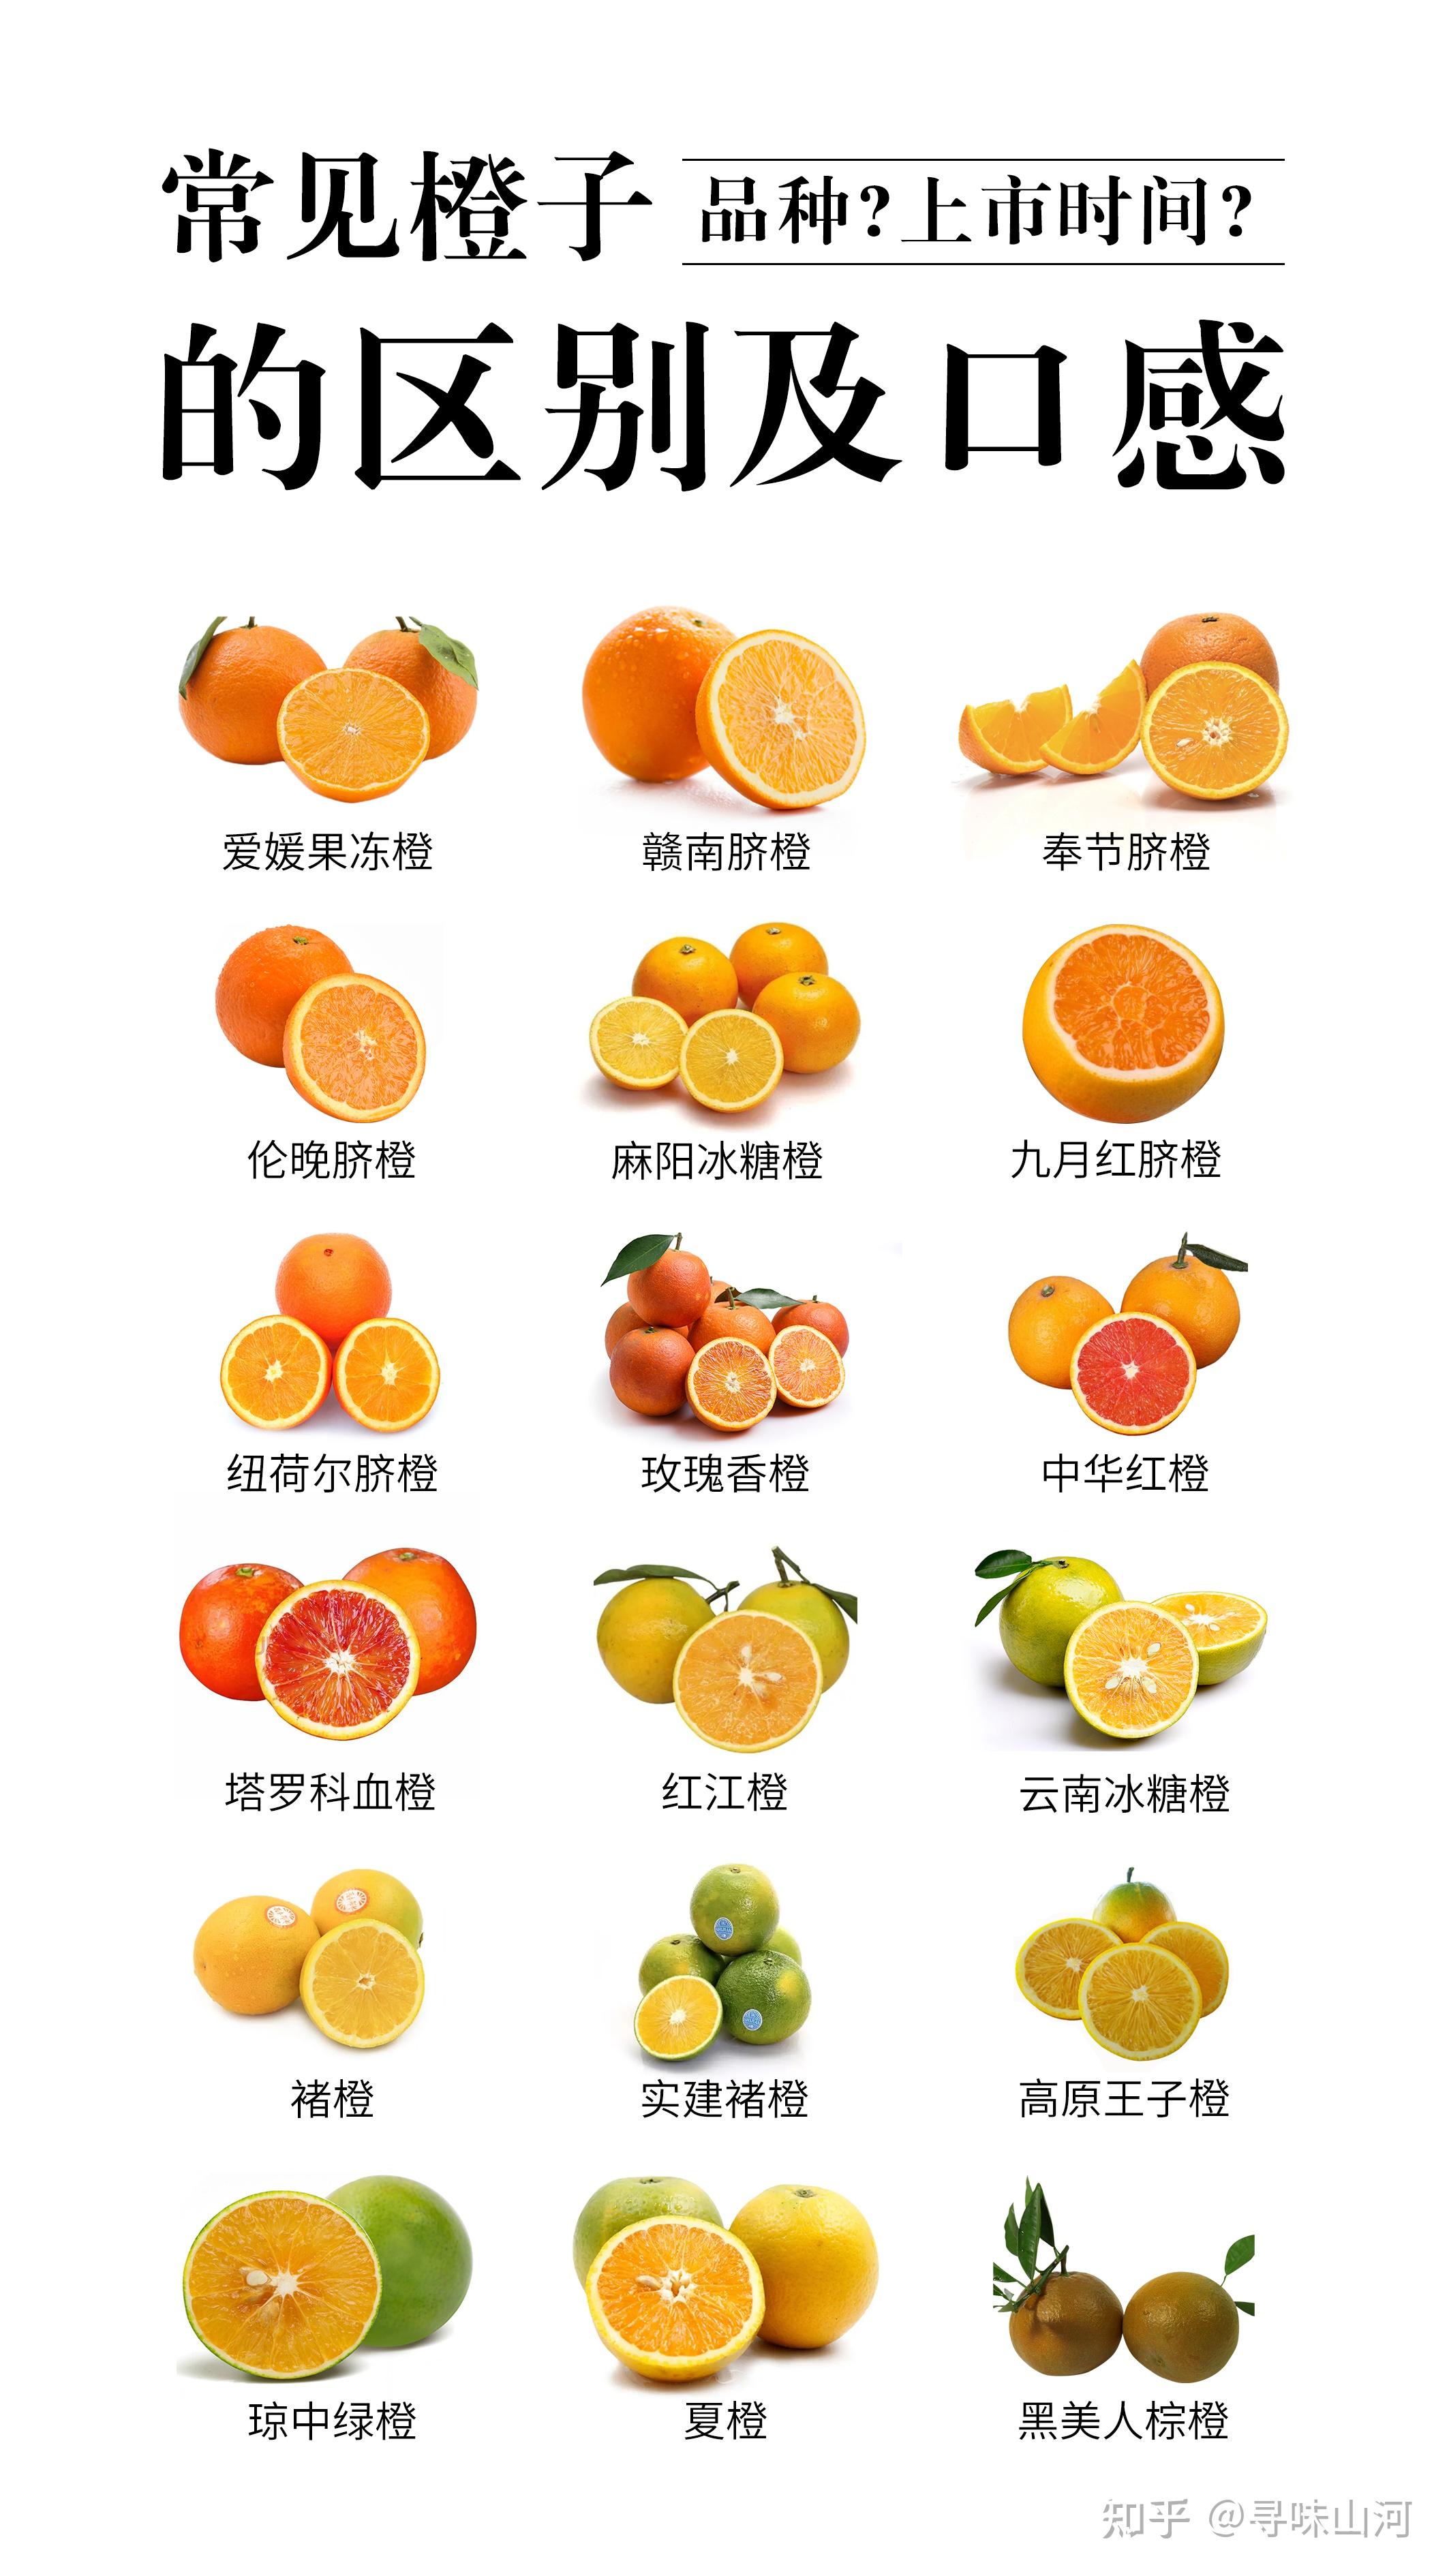 橙子合集常见橙子品种及口感